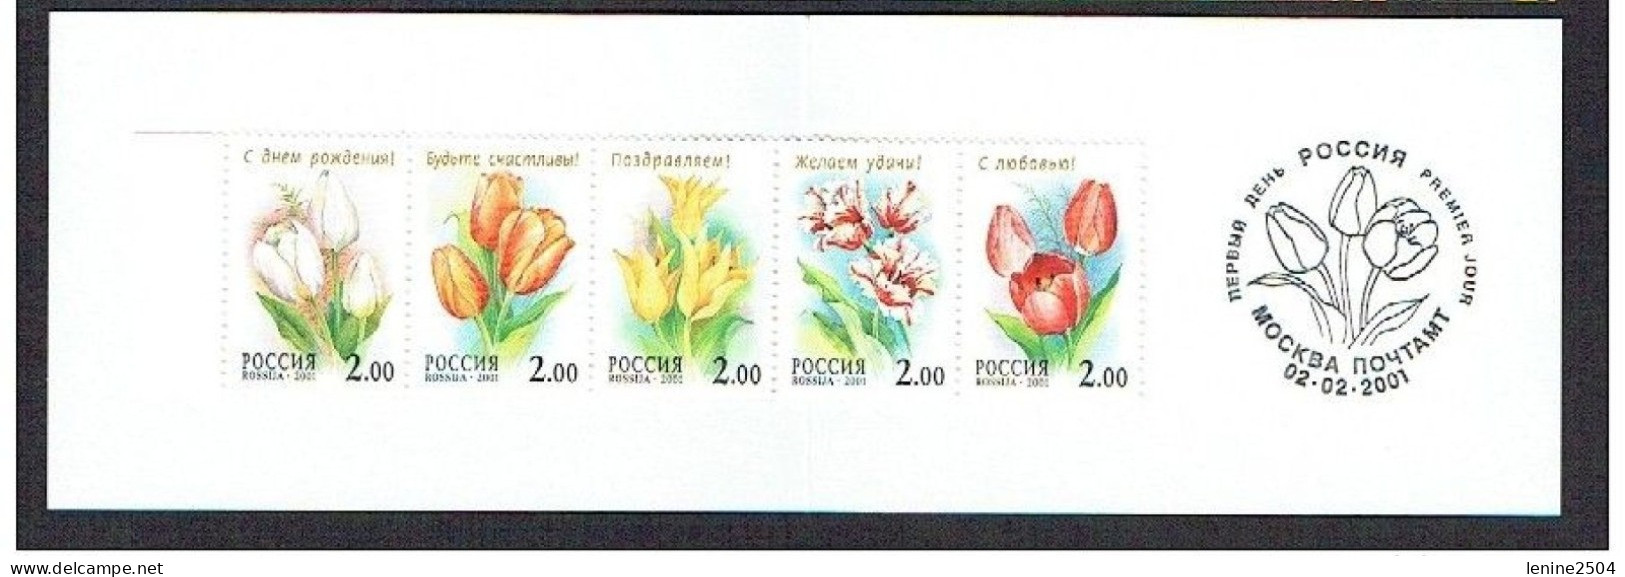 Russie 2001 N° 6546-6550 ** Tulipes Emission 1er Jour Carnet Prestige Folder Booklet. - Neufs